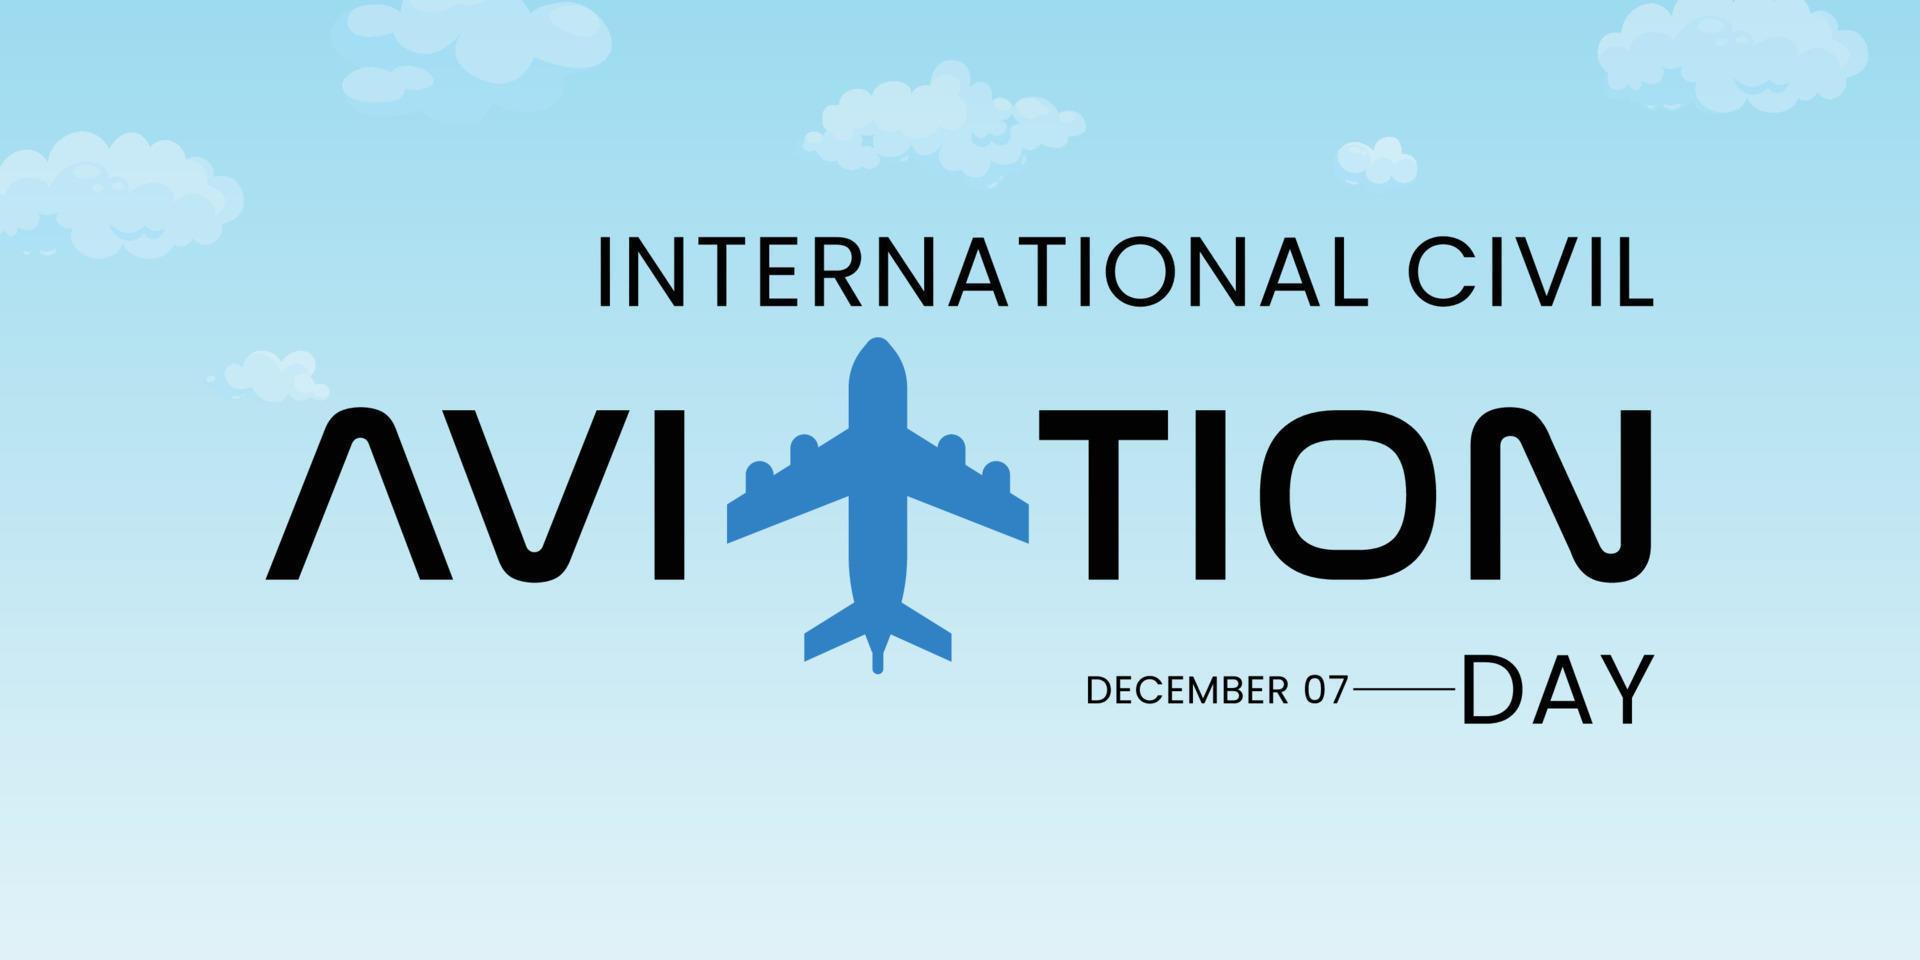 día de la aviación civil internacional bueno para la celebración del día de la aviación civil internacional. diseño plano. diseño de volante ilustración plana vector